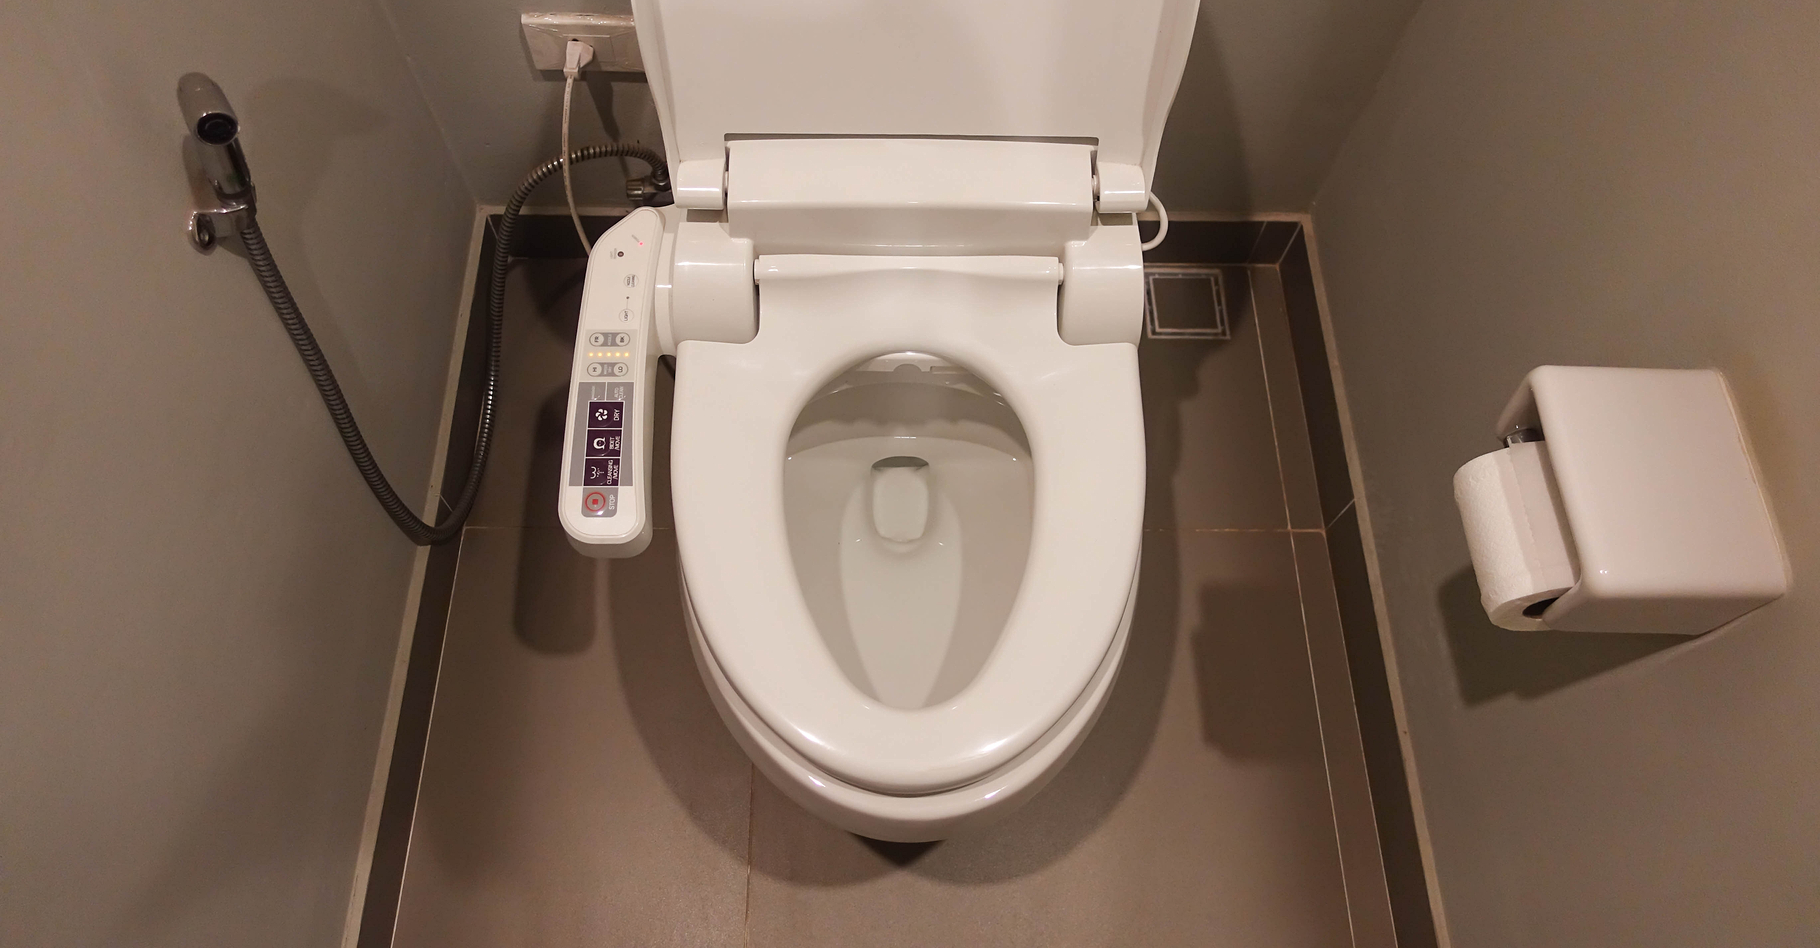 Les toilettes connectées peuvent être attaquées par des hackers. © Panatda Saengow, Shutterstock